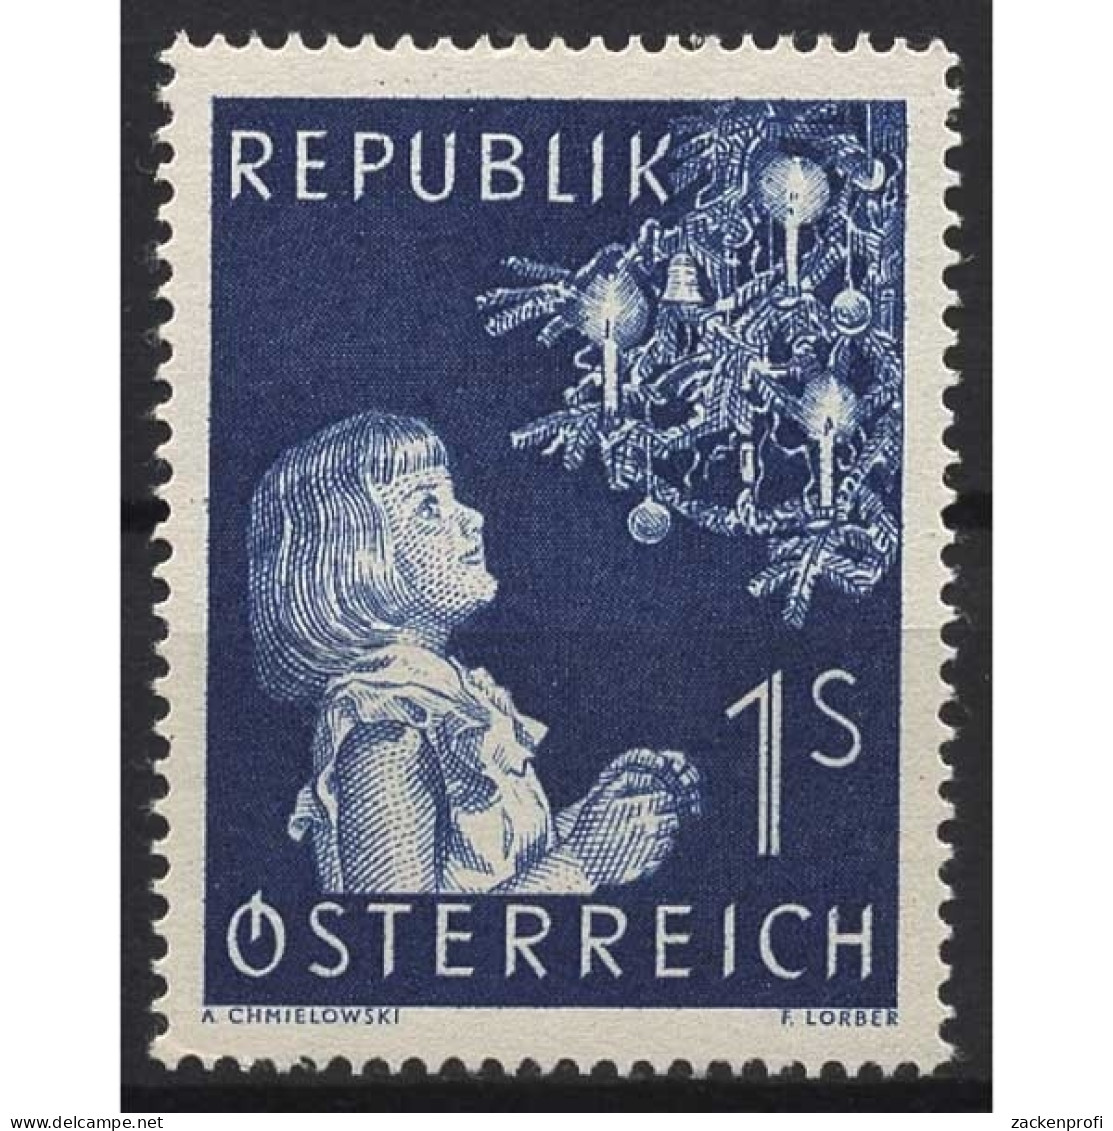 Österreich 1954 Weihnachten: Mädchen Vor Christbaum 1009 Postfrisch - Unused Stamps